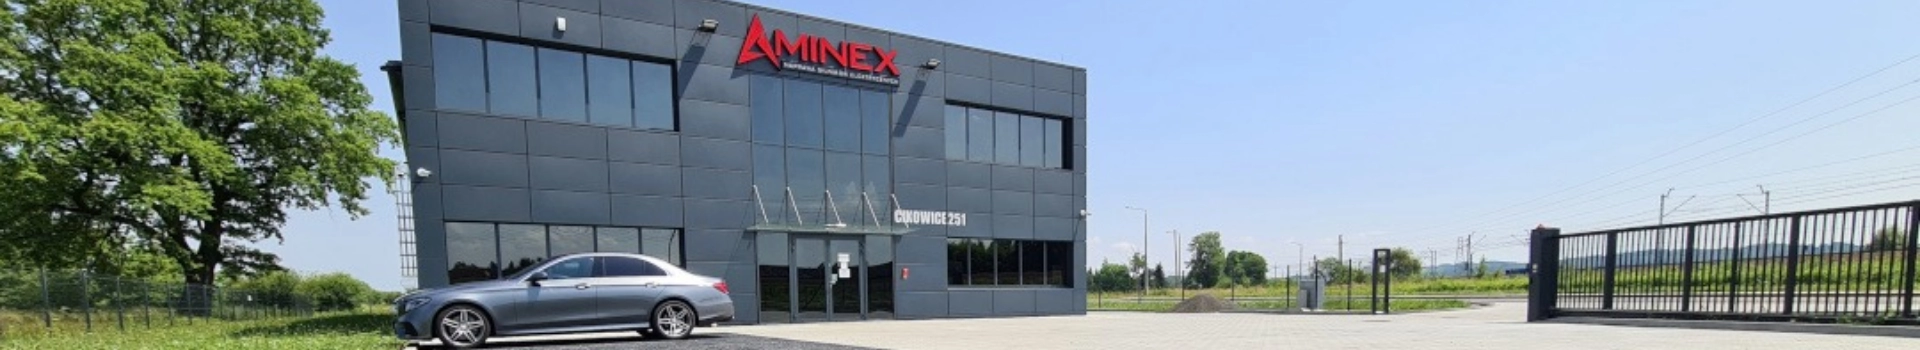 budynek siedziby firmy aminex